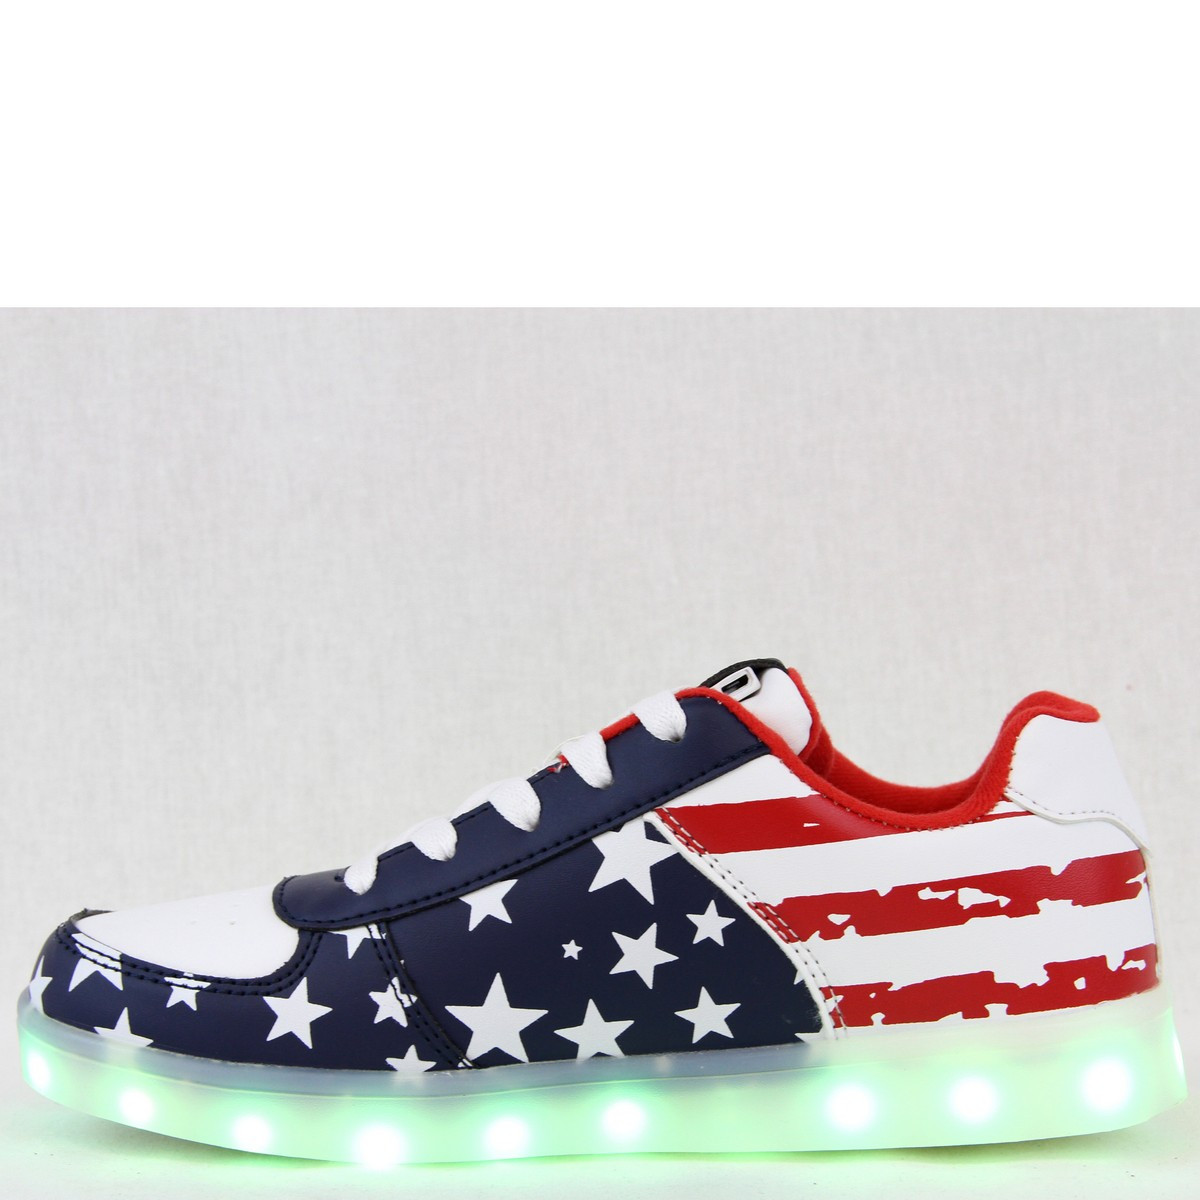 Women Sneaker Lightweight 7 Mode LED Up Tennis Shoes USA Flag